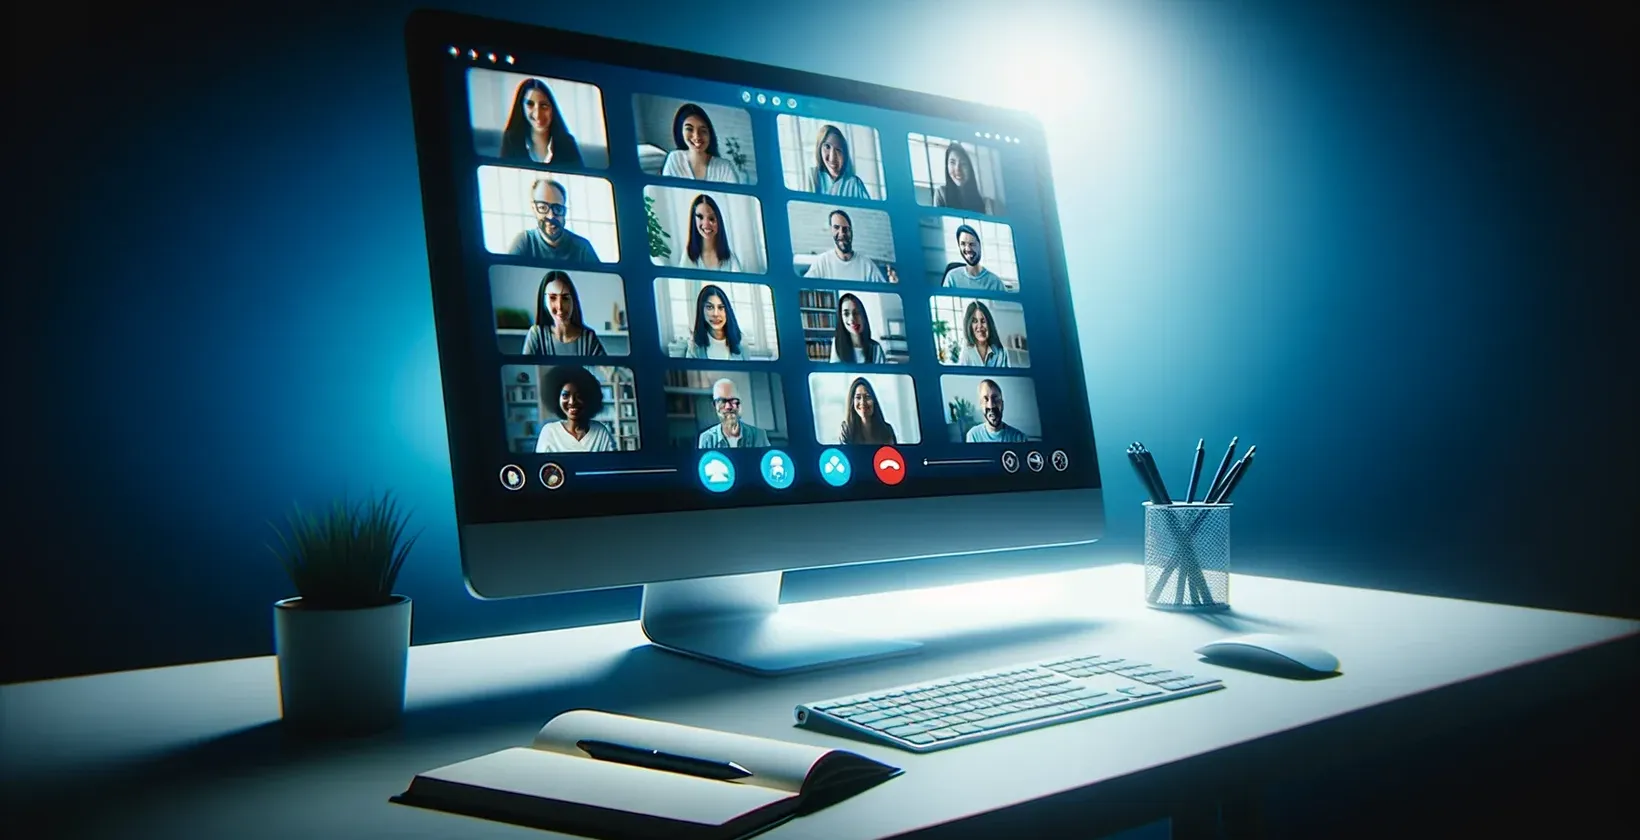 Das Bild eines Computerbildschirms zeigt eine GoToMeeting-Sitzung, auf der eine Gruppe von Personen und eine Live-Transkription zu sehen sind.